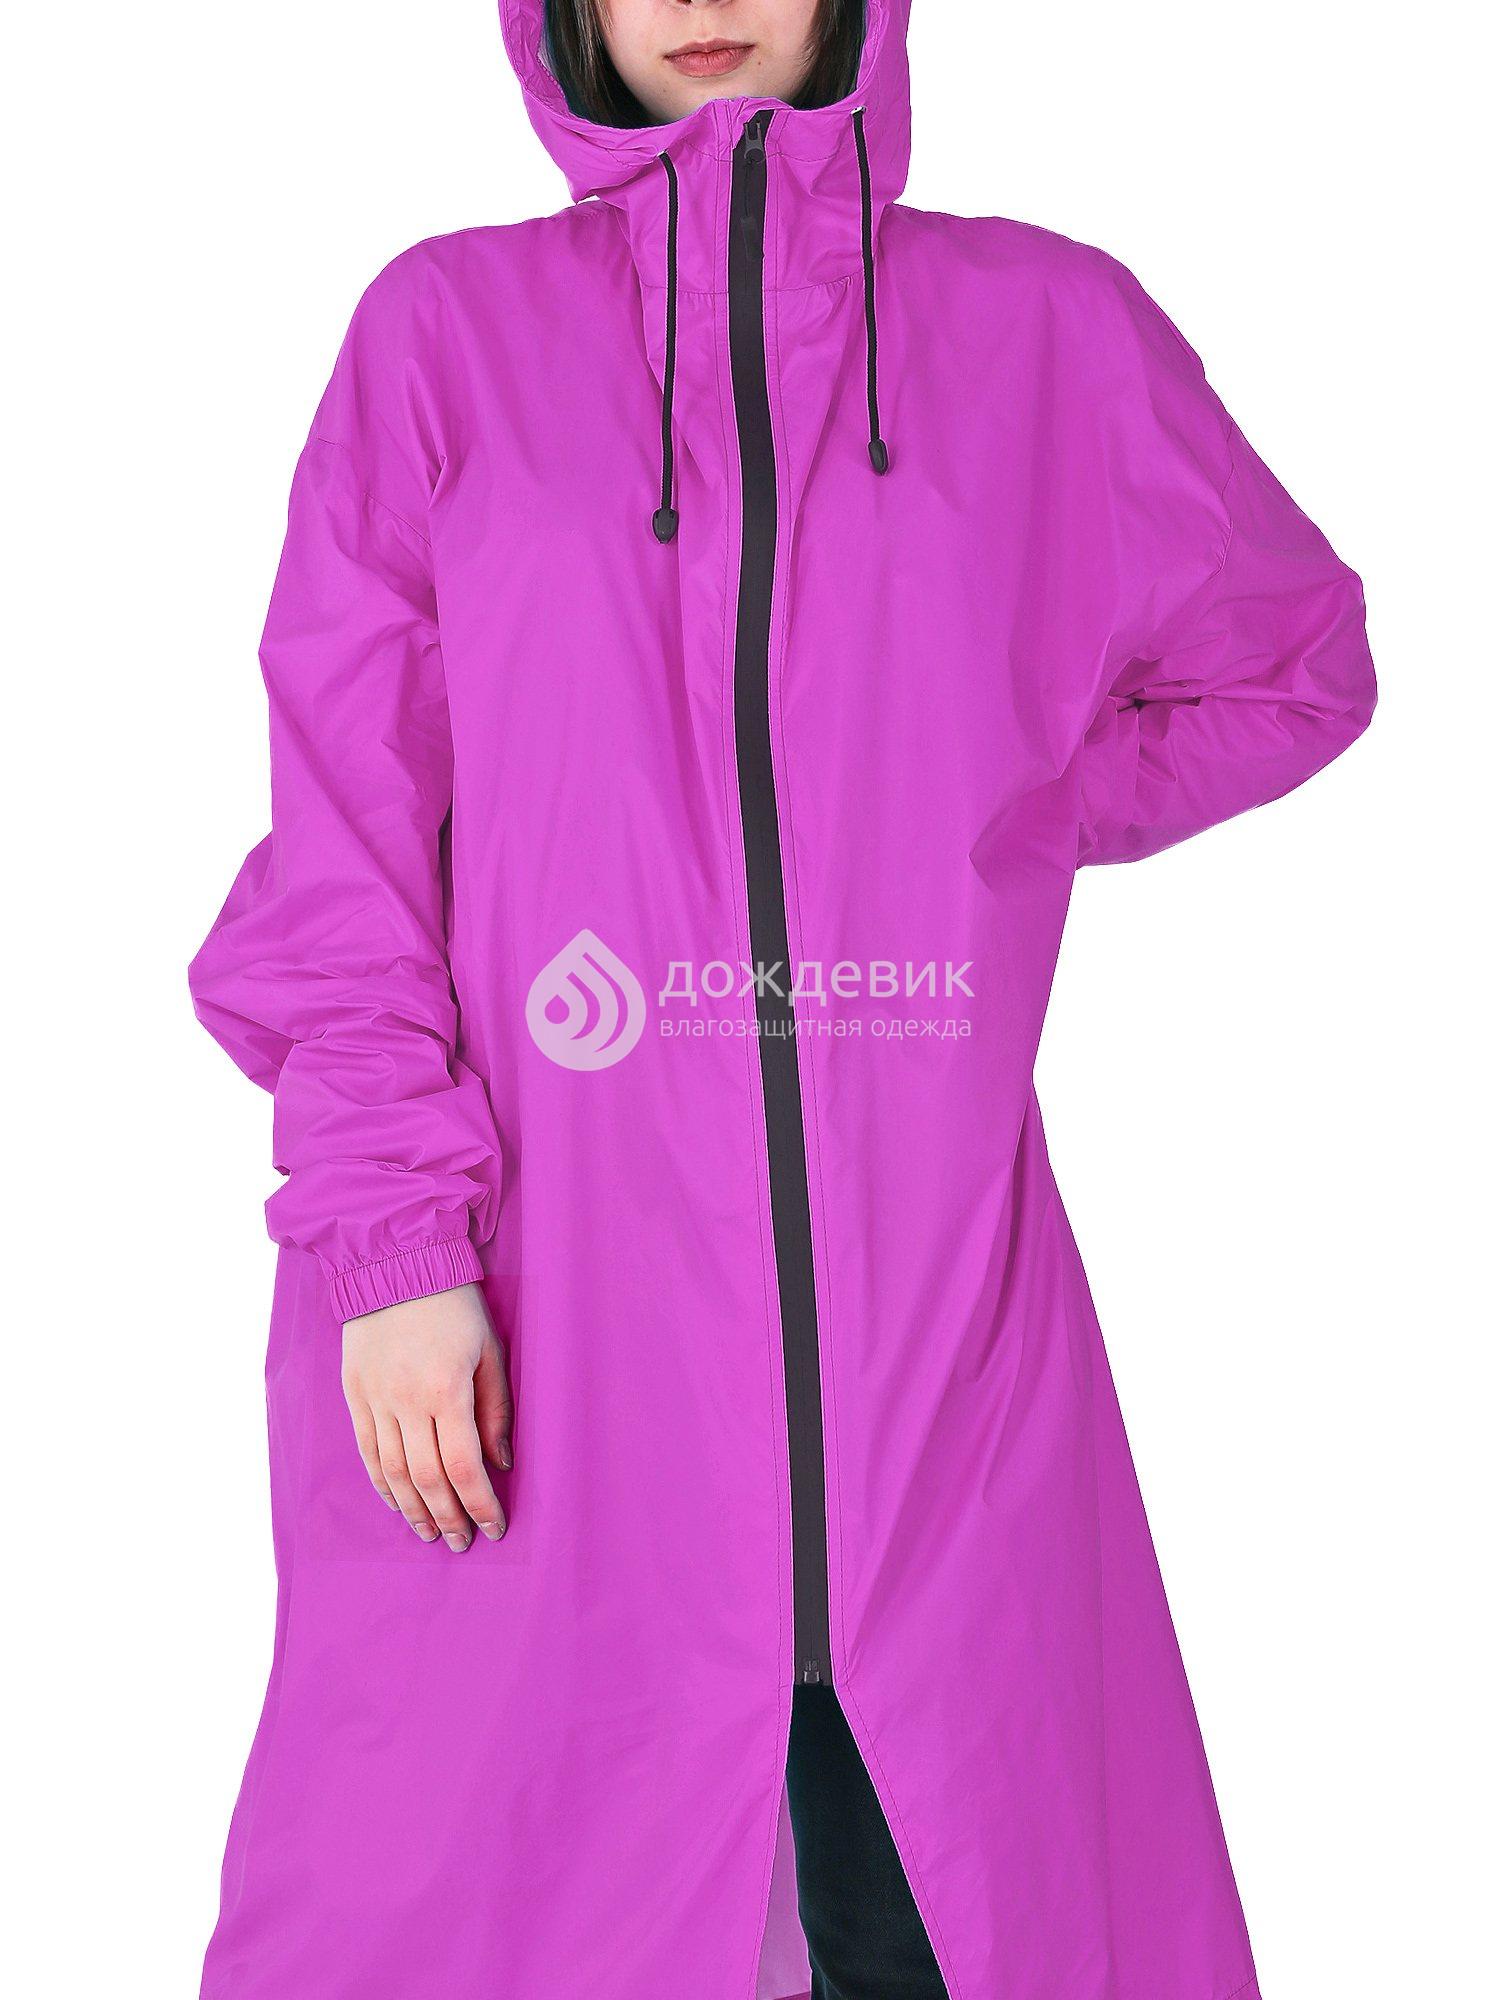 Плащ-дождевик «Ультра» модный с высоким воротом фиолетовый